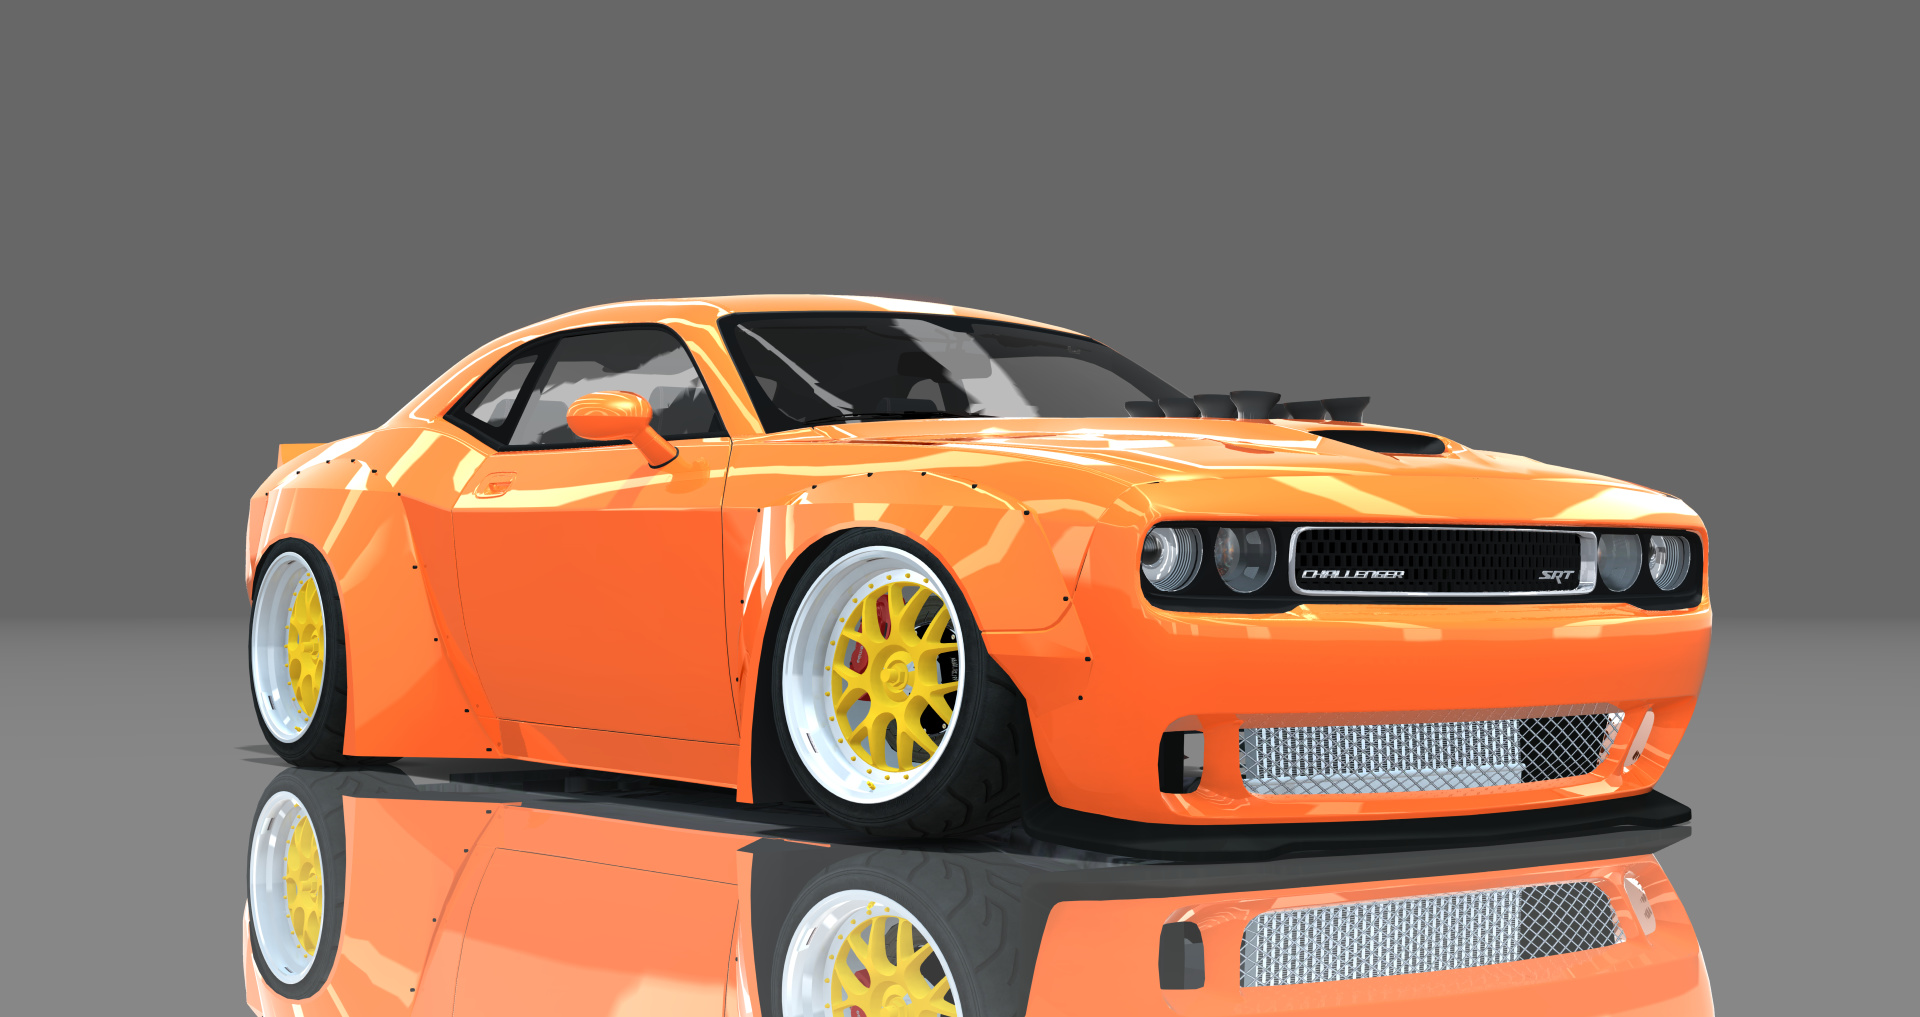 DTP Dodge Challenger SRT8, skin orange